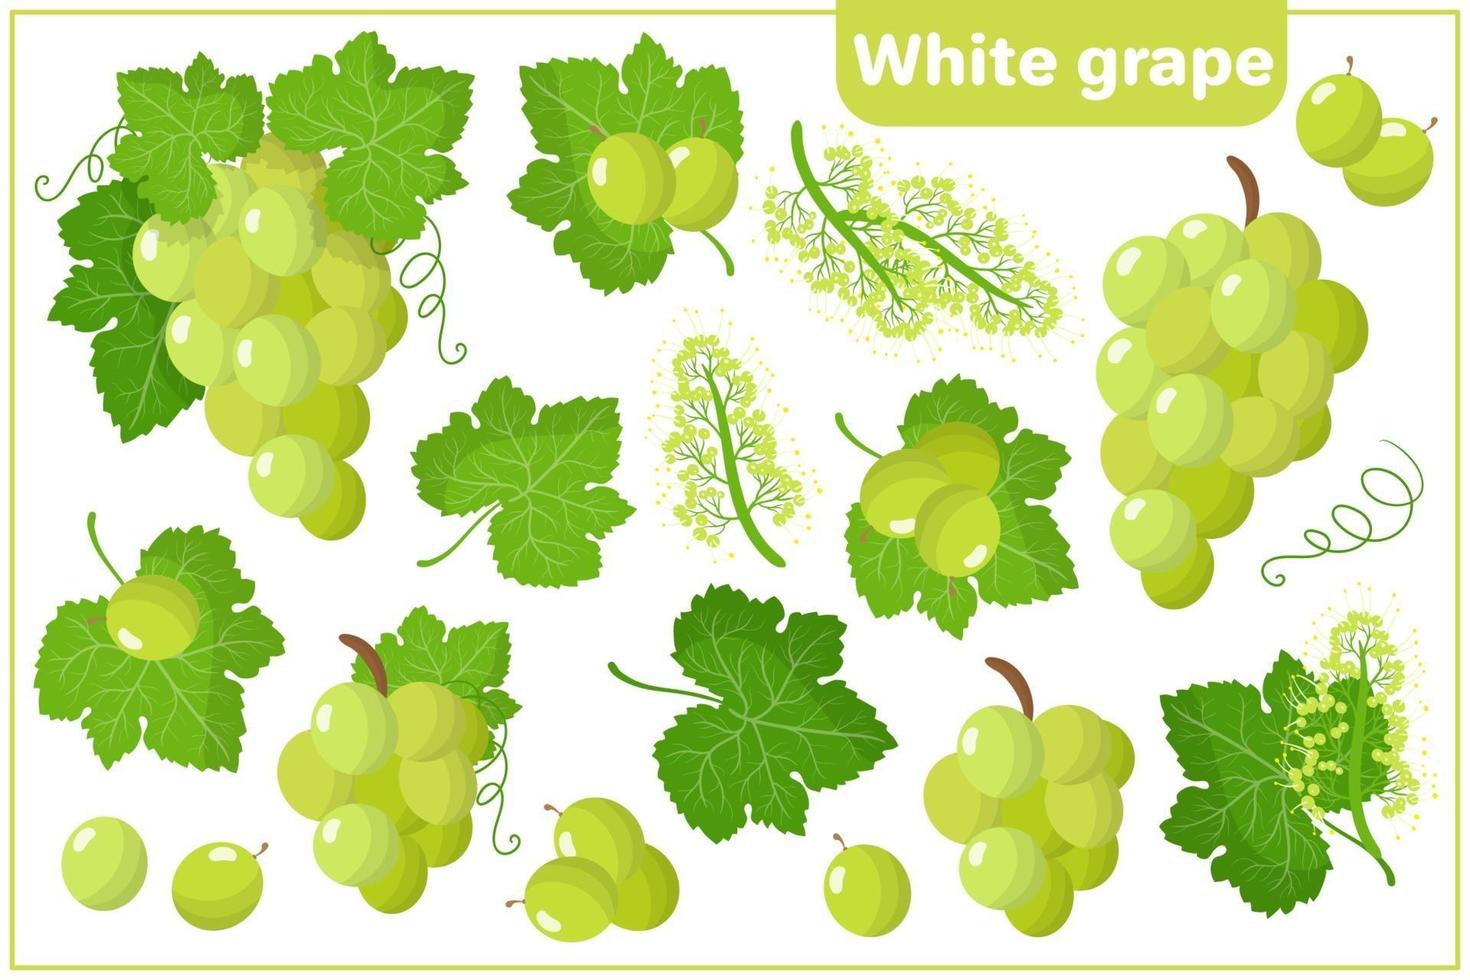 Satz Vektorkarikaturillustrationen mit exotischen Früchten der weißen Traube lokalisiert auf weißem Hintergrund vektor